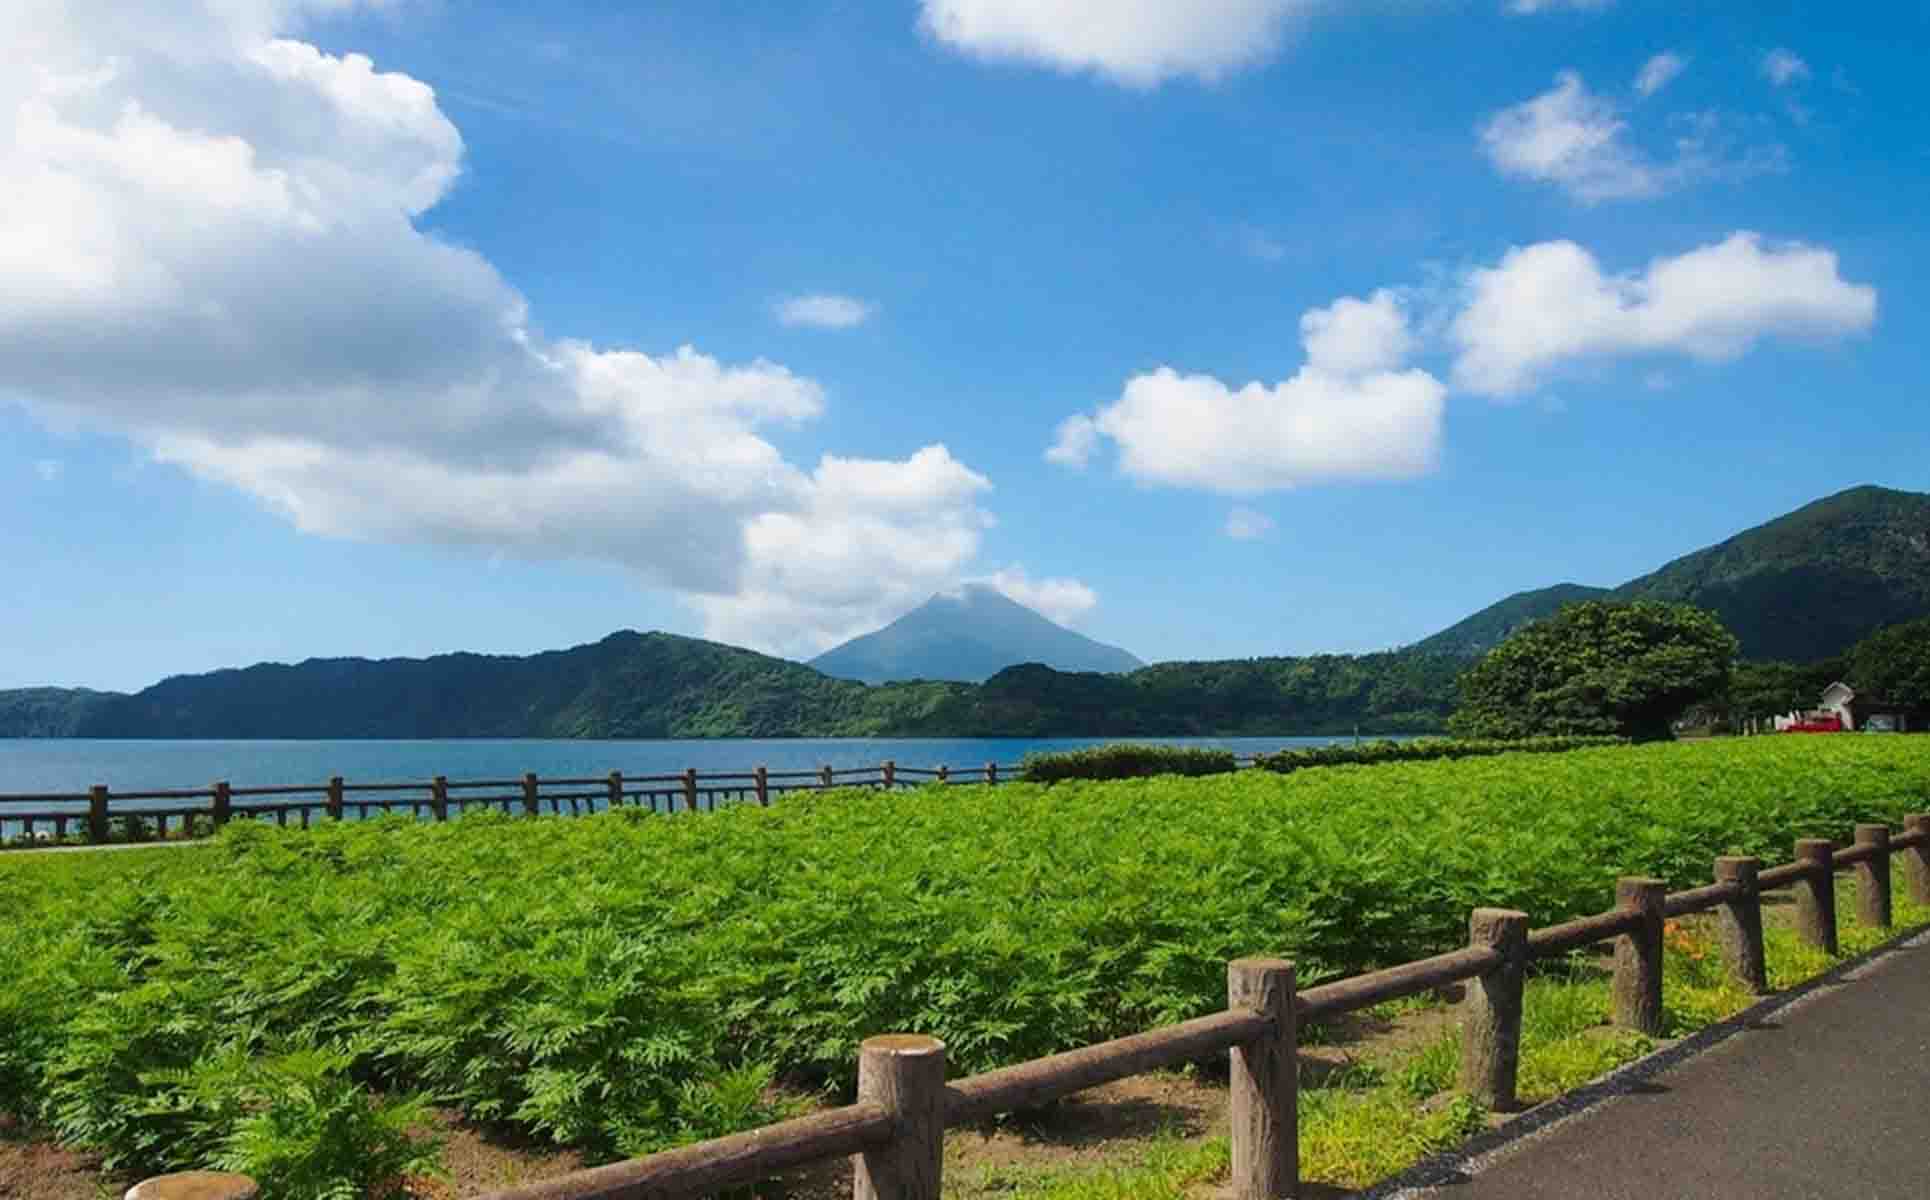 Lake Ikeda Ride: Lake Overlooking the Volcanic Mt Kaimon